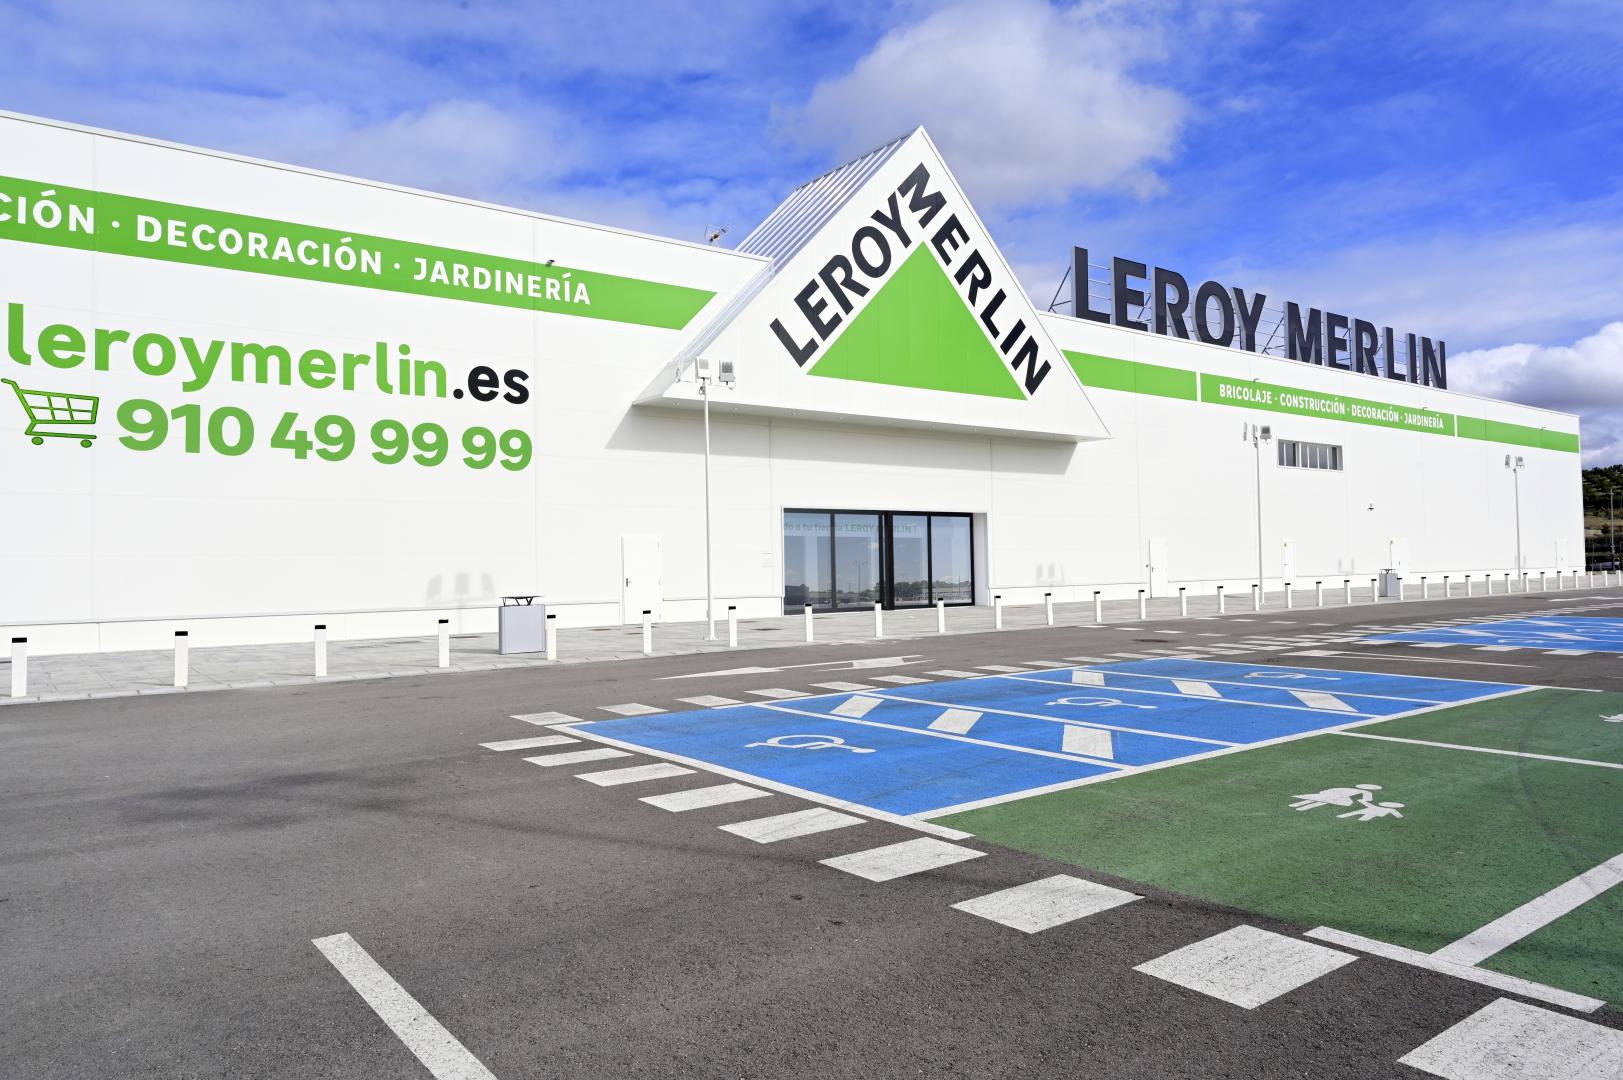 Leroy Merlin inaugura su nueva tienda en Jaén